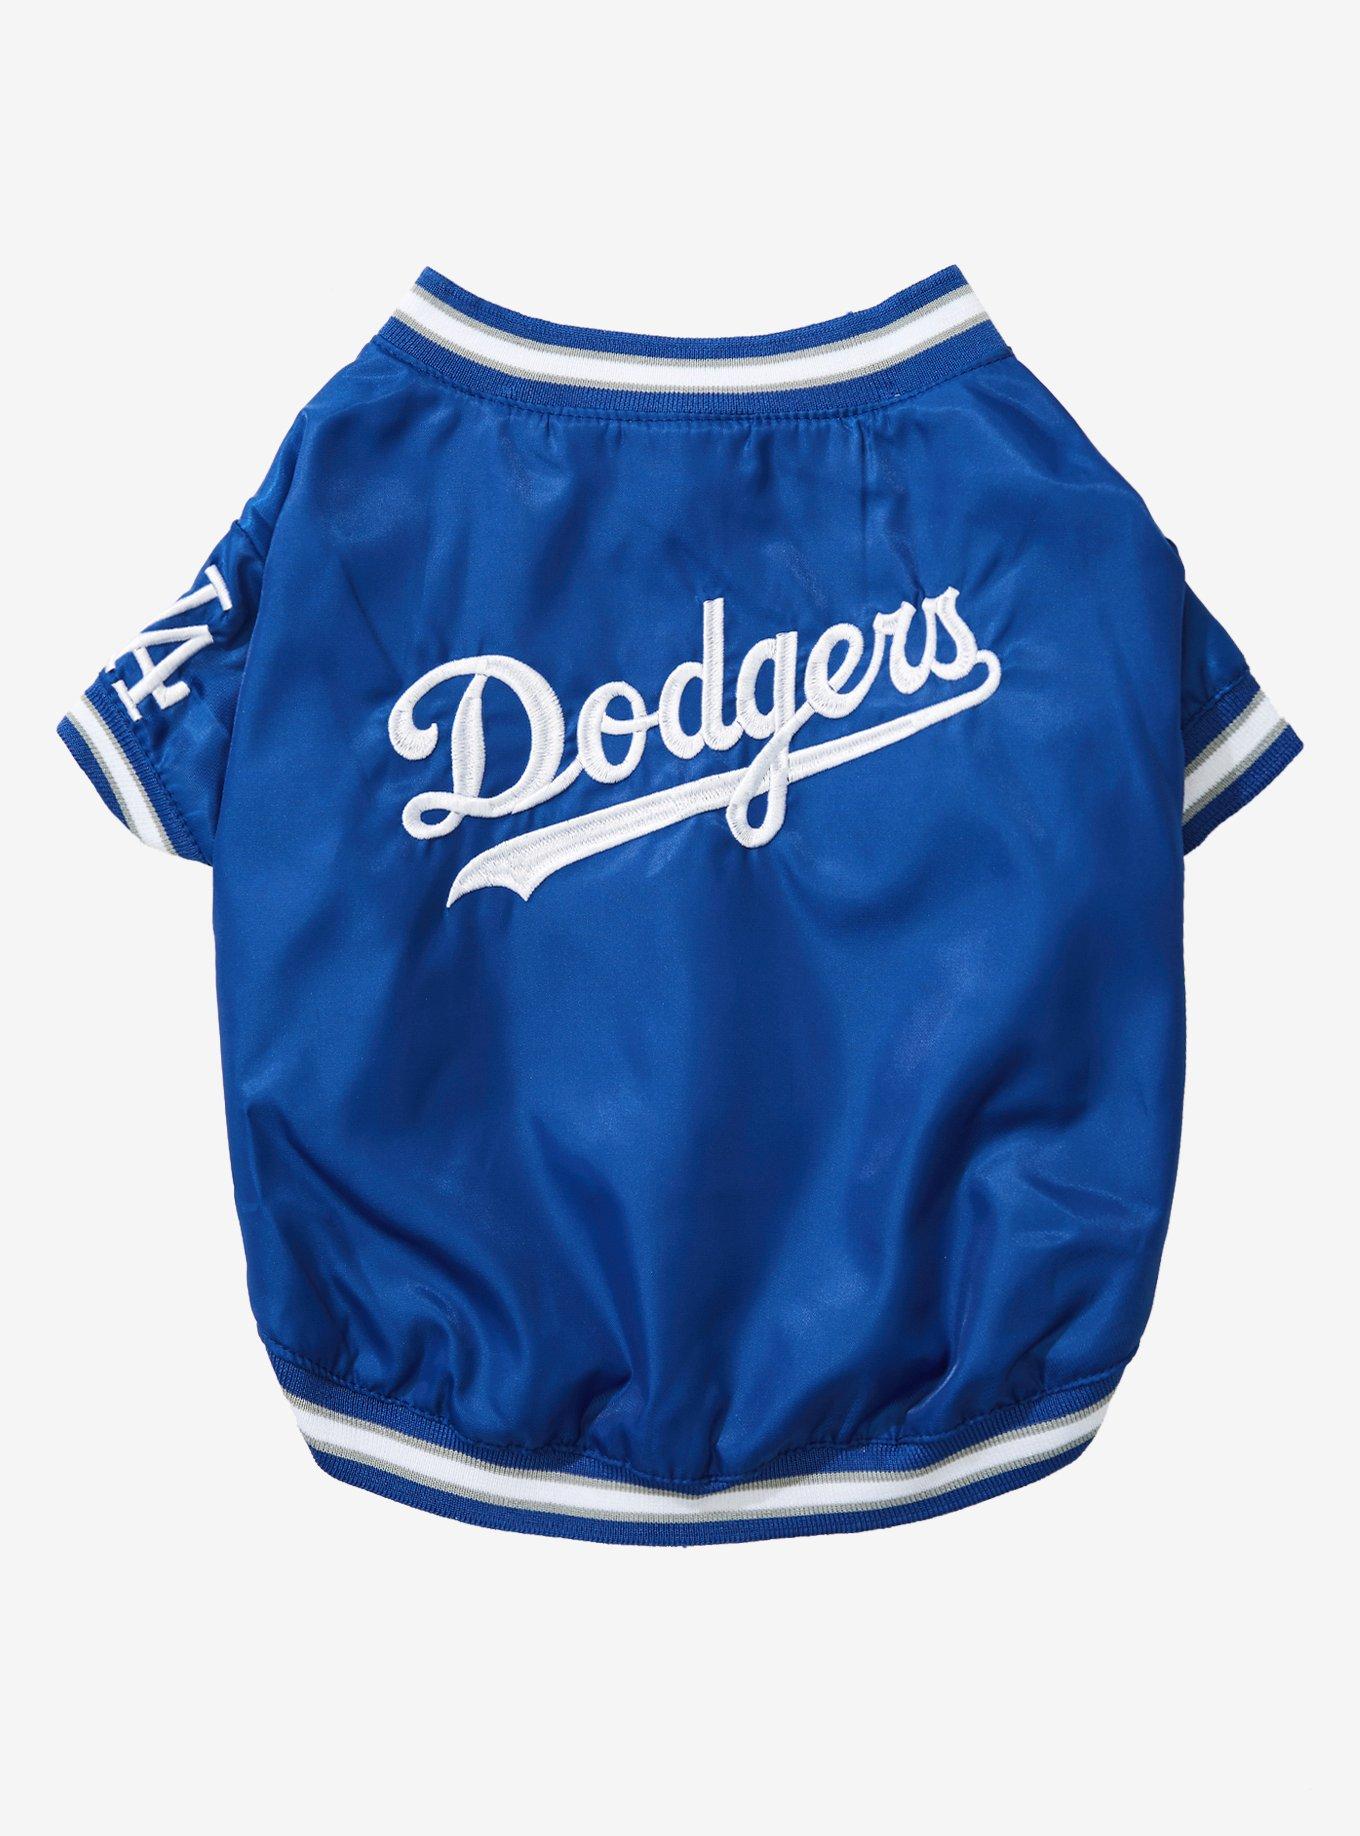 Hello Kitty LA Dodgers Blue Hoodie Sweater Size XS please read